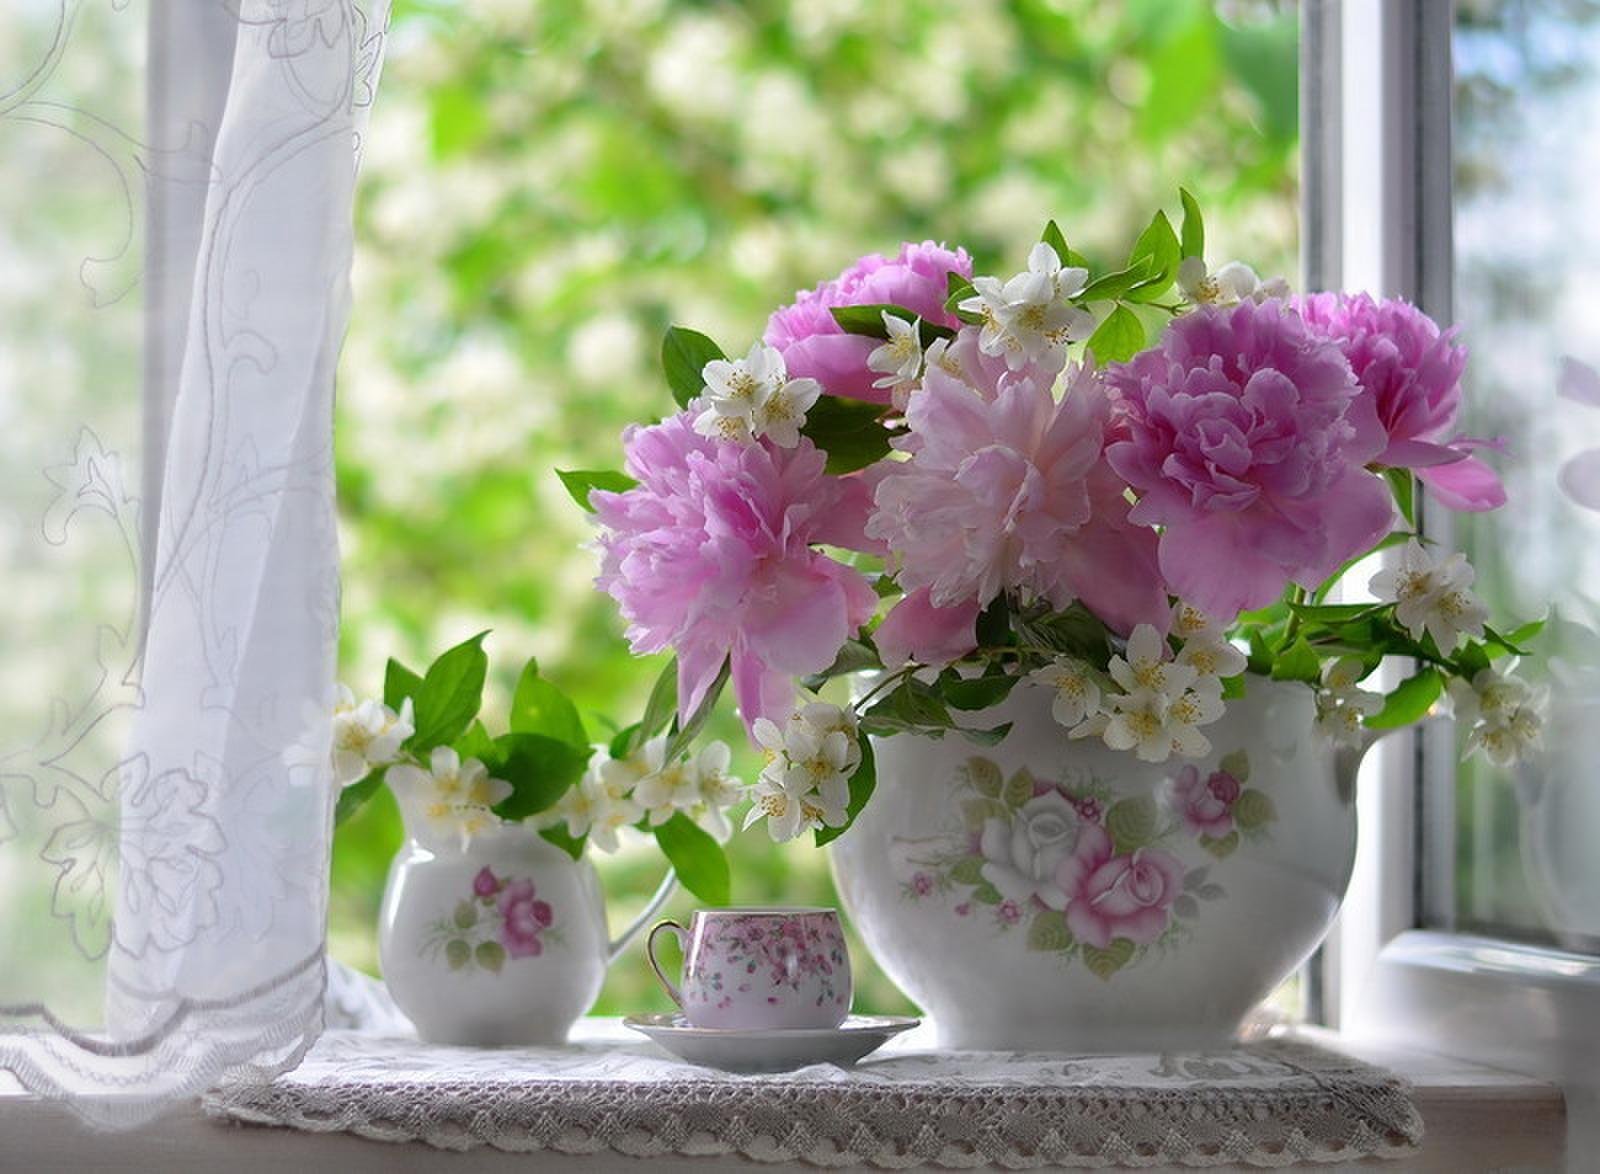 Доброе утро апреля картинки красивые необычные нежные. Цветы на окне. Нежные весенние цветы. Летние цветы в вазе. Утренний букет.